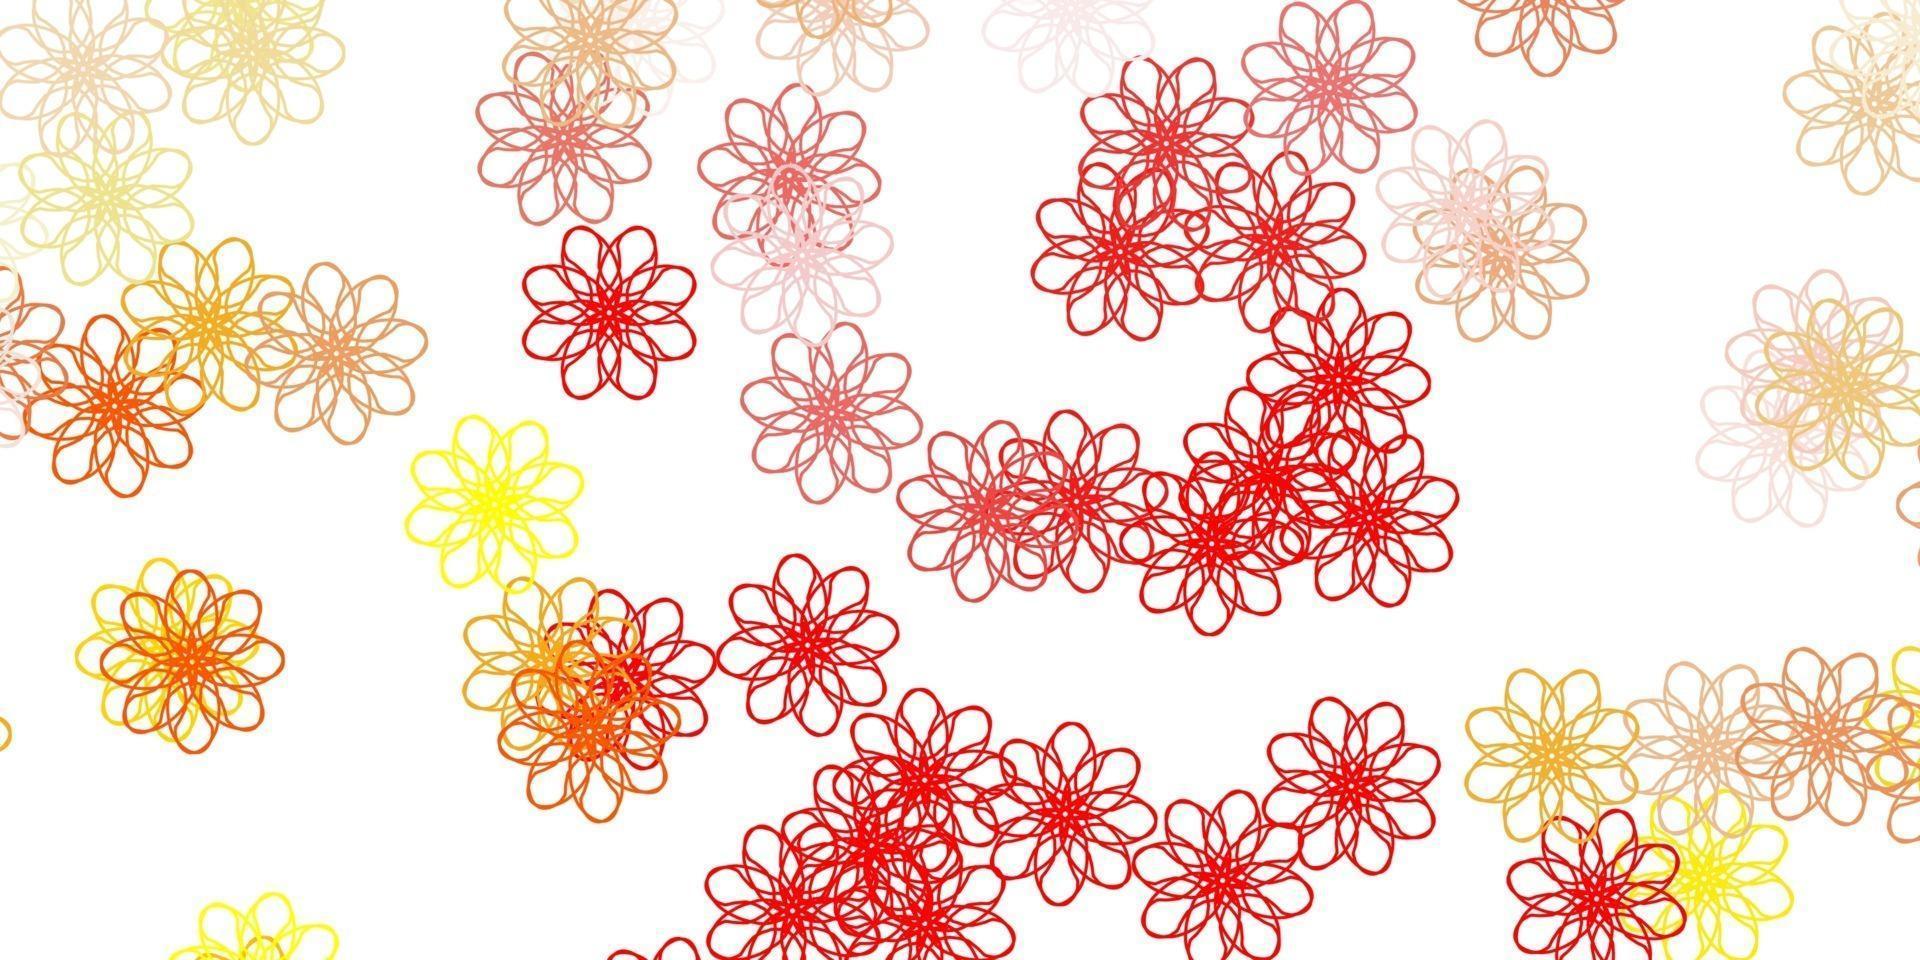 lichtrood, geel vector doodle sjabloon met bloemen.